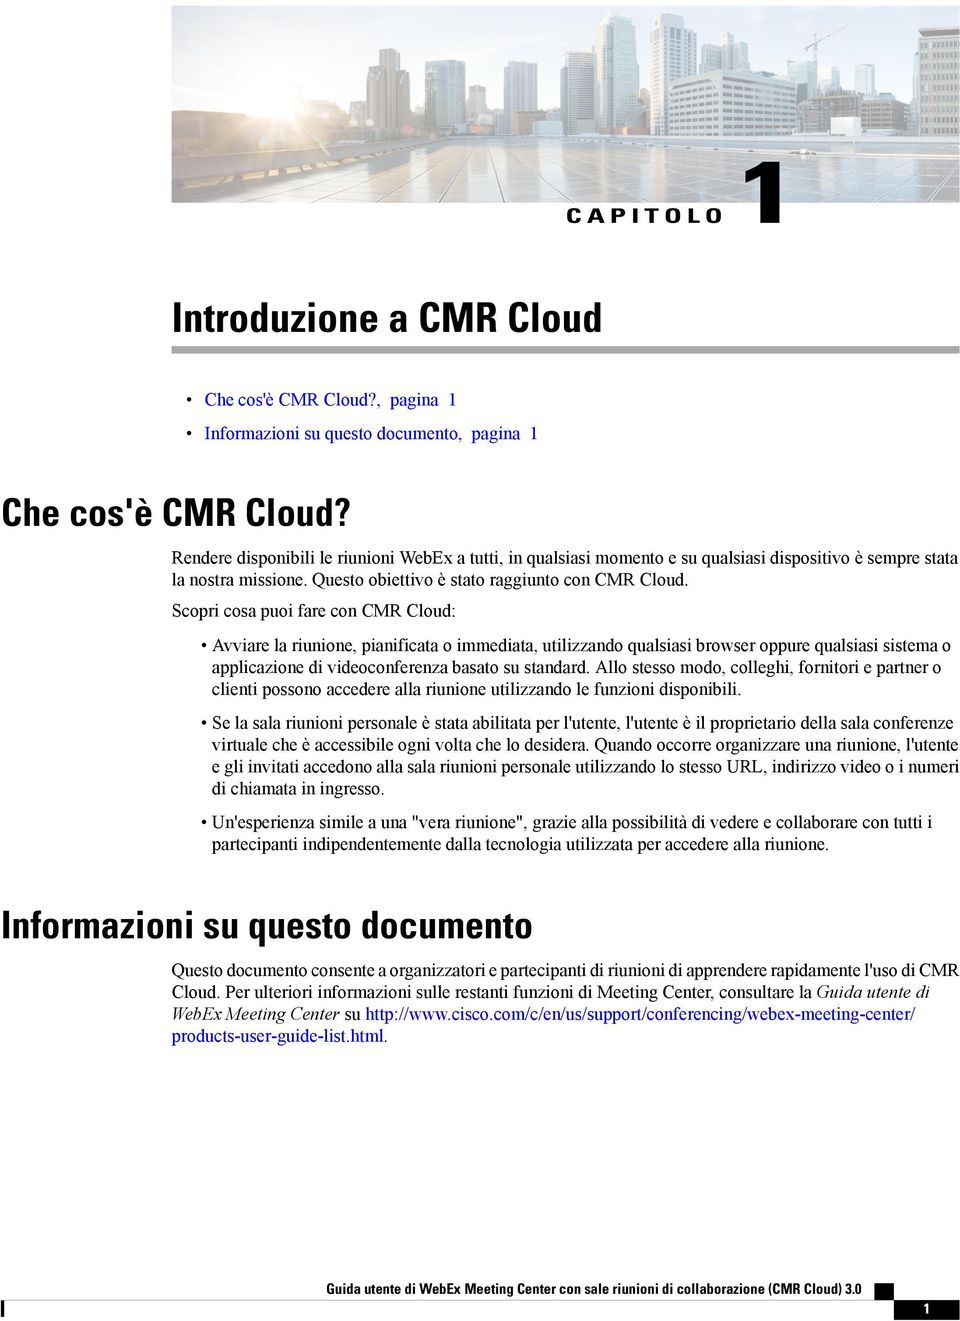 Scopri cosa puoi fare con CMR Cloud: Avviare la riunione, pianificata o immediata, utilizzando qualsiasi browser oppure qualsiasi sistema o applicazione di videoconferenza basato su standard.